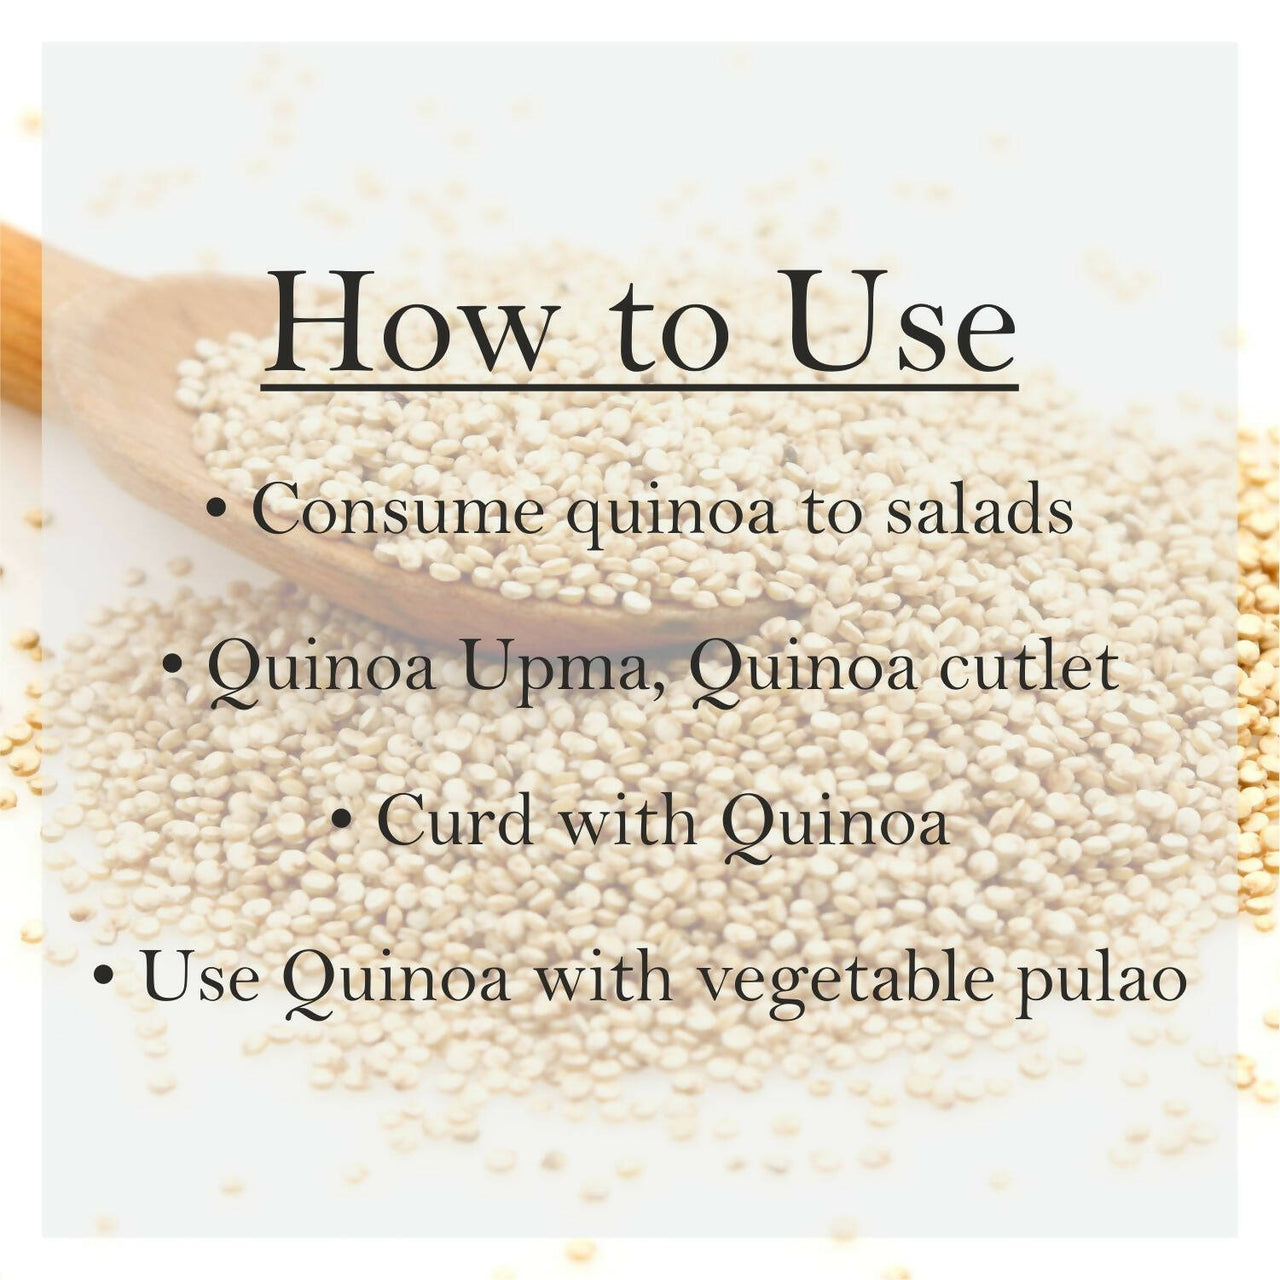 Nutriorg Organic Quinoa - Distacart